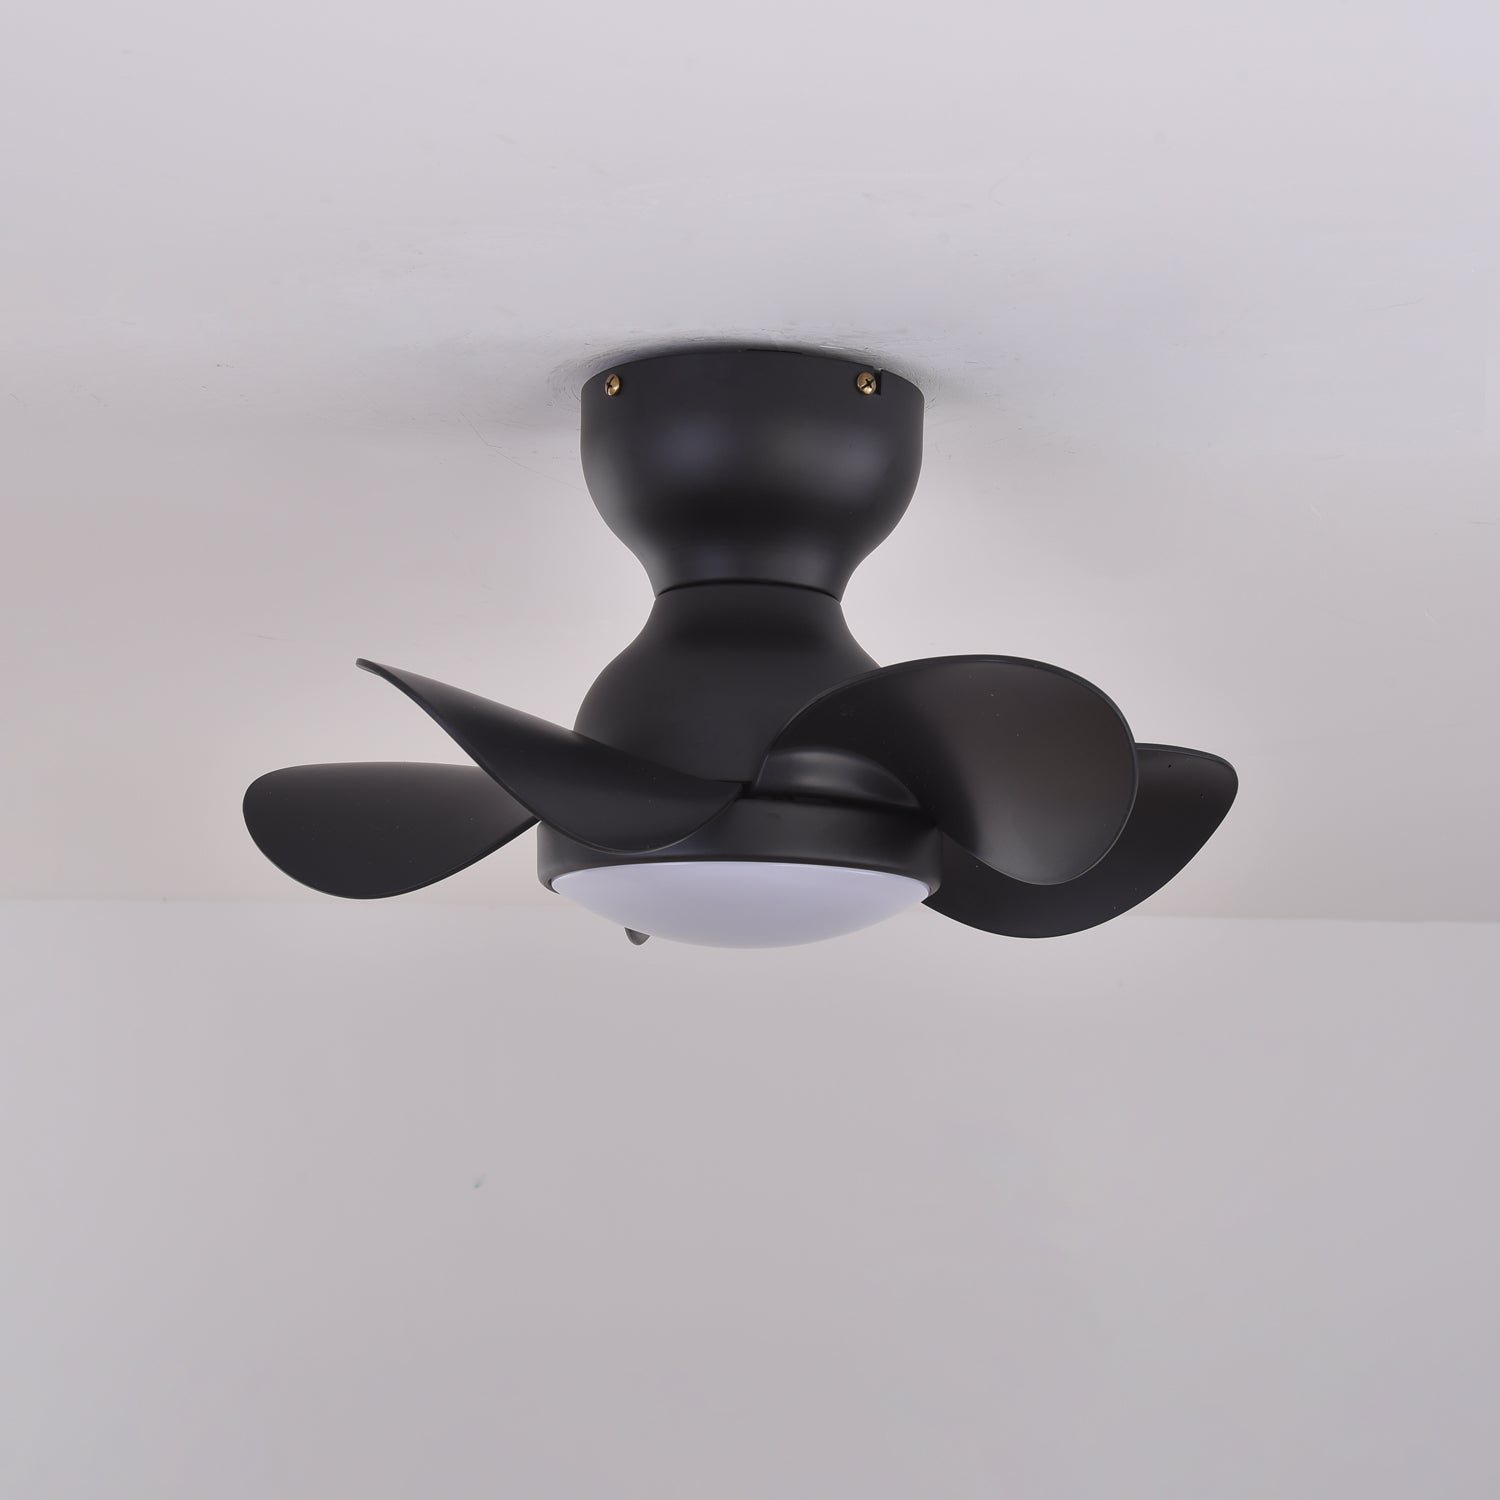 Noosa 18" Ceiling Fan Light